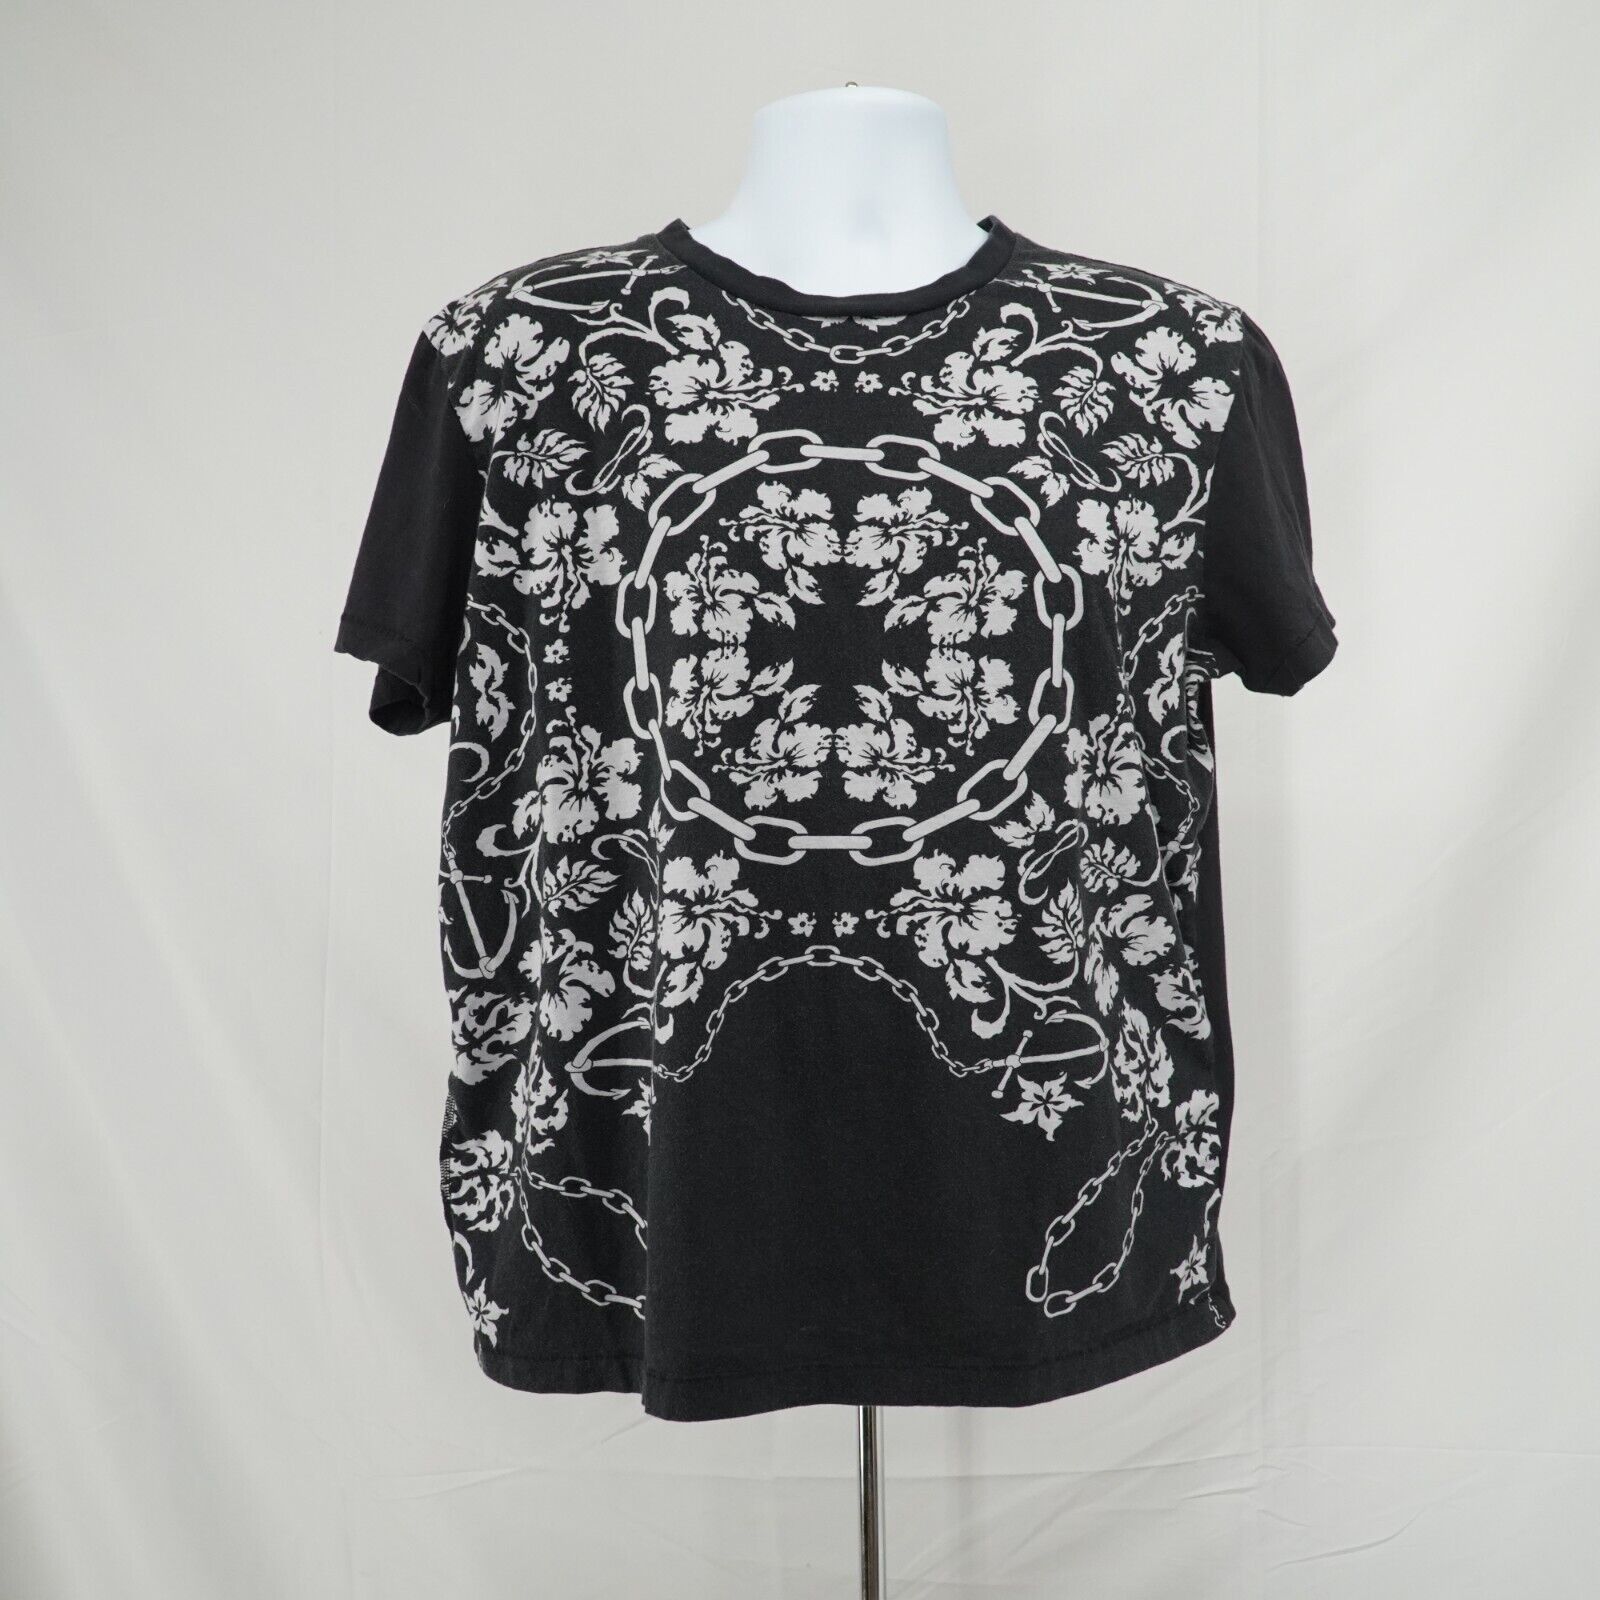 Black White Printed Shirt Floral Chains Anchor Hawaiian Tee - 16